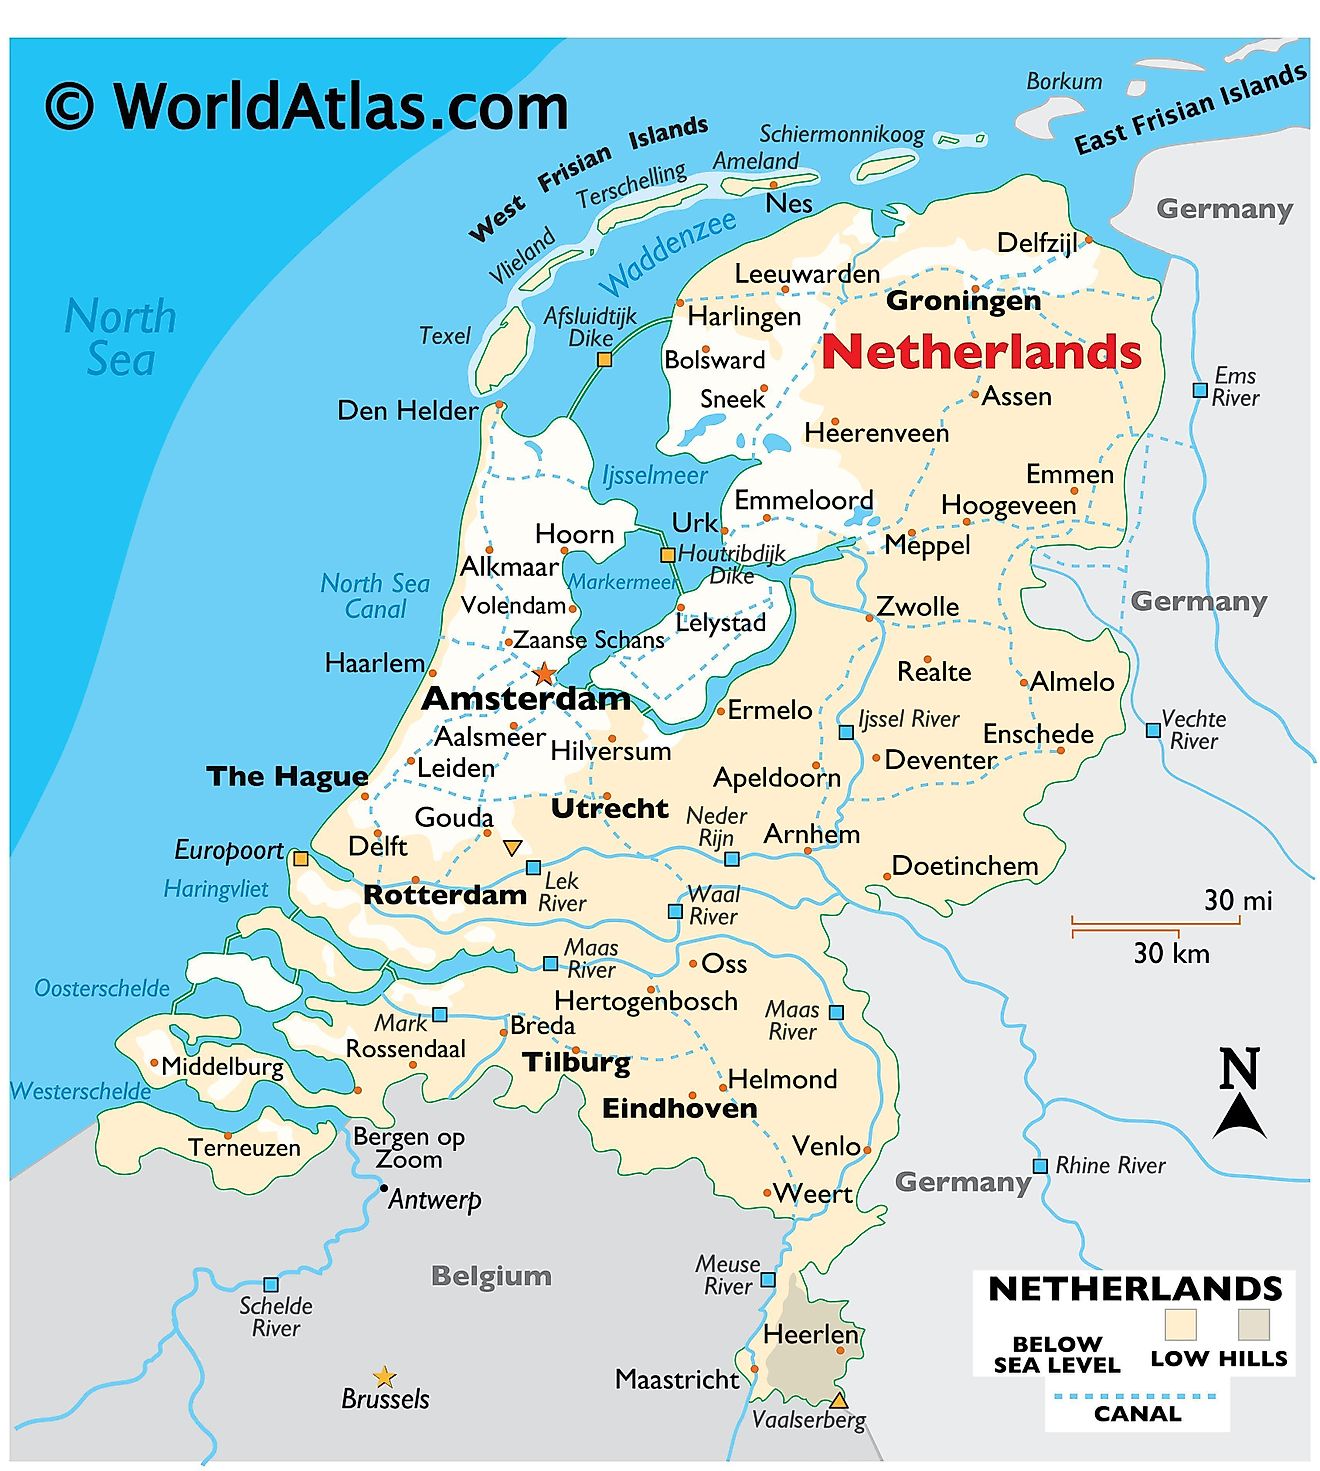 Hollandia fizikai térképe a domborzat, nemzetközi határok, főbb folyók, szélső pontok, fontos városok, szigetek stb. feltüntetésével.